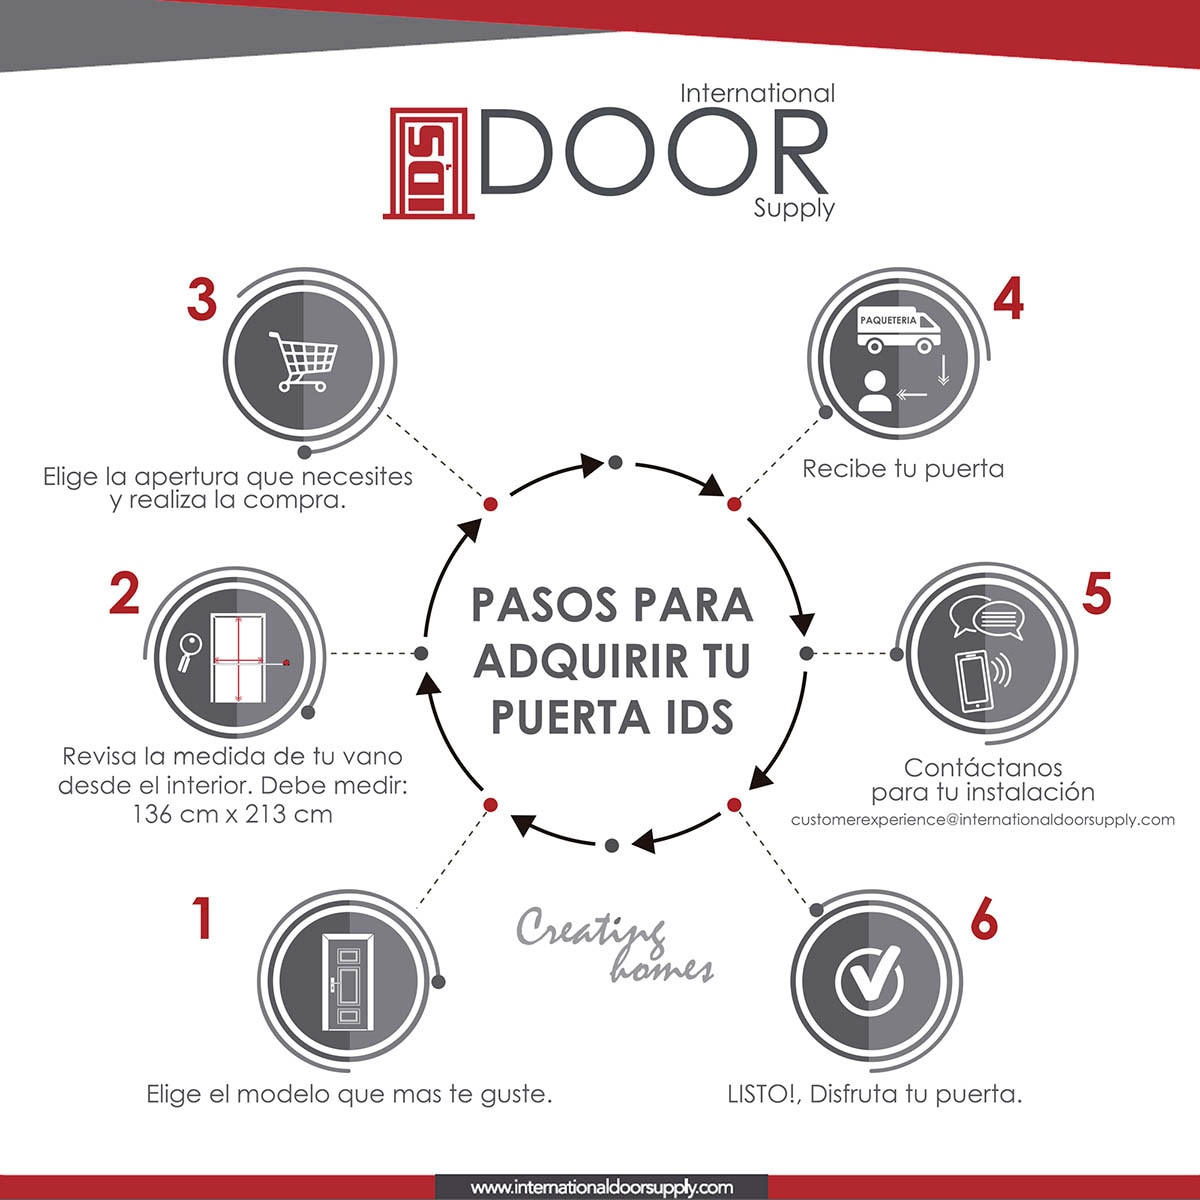 International Door Supply, Puerta de Alta Seguridad Santa Lucia con Fijo Izquierda